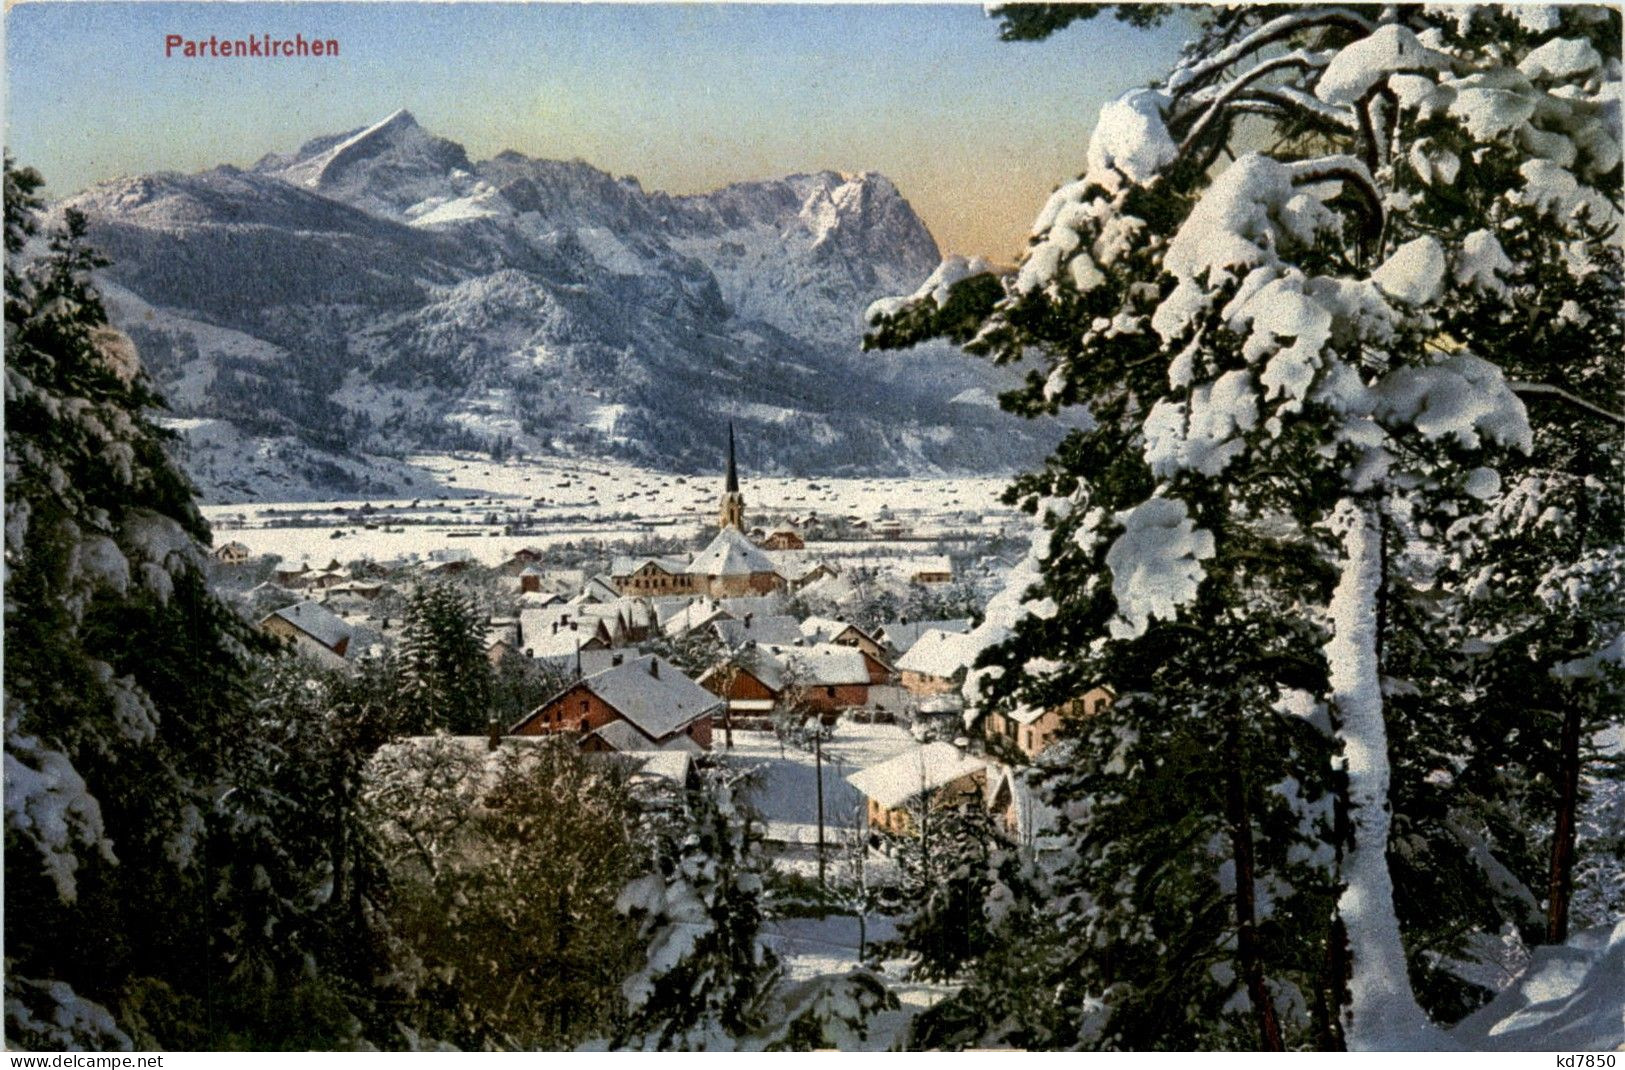 Partenkirchen - Garmisch-Partenkirchen